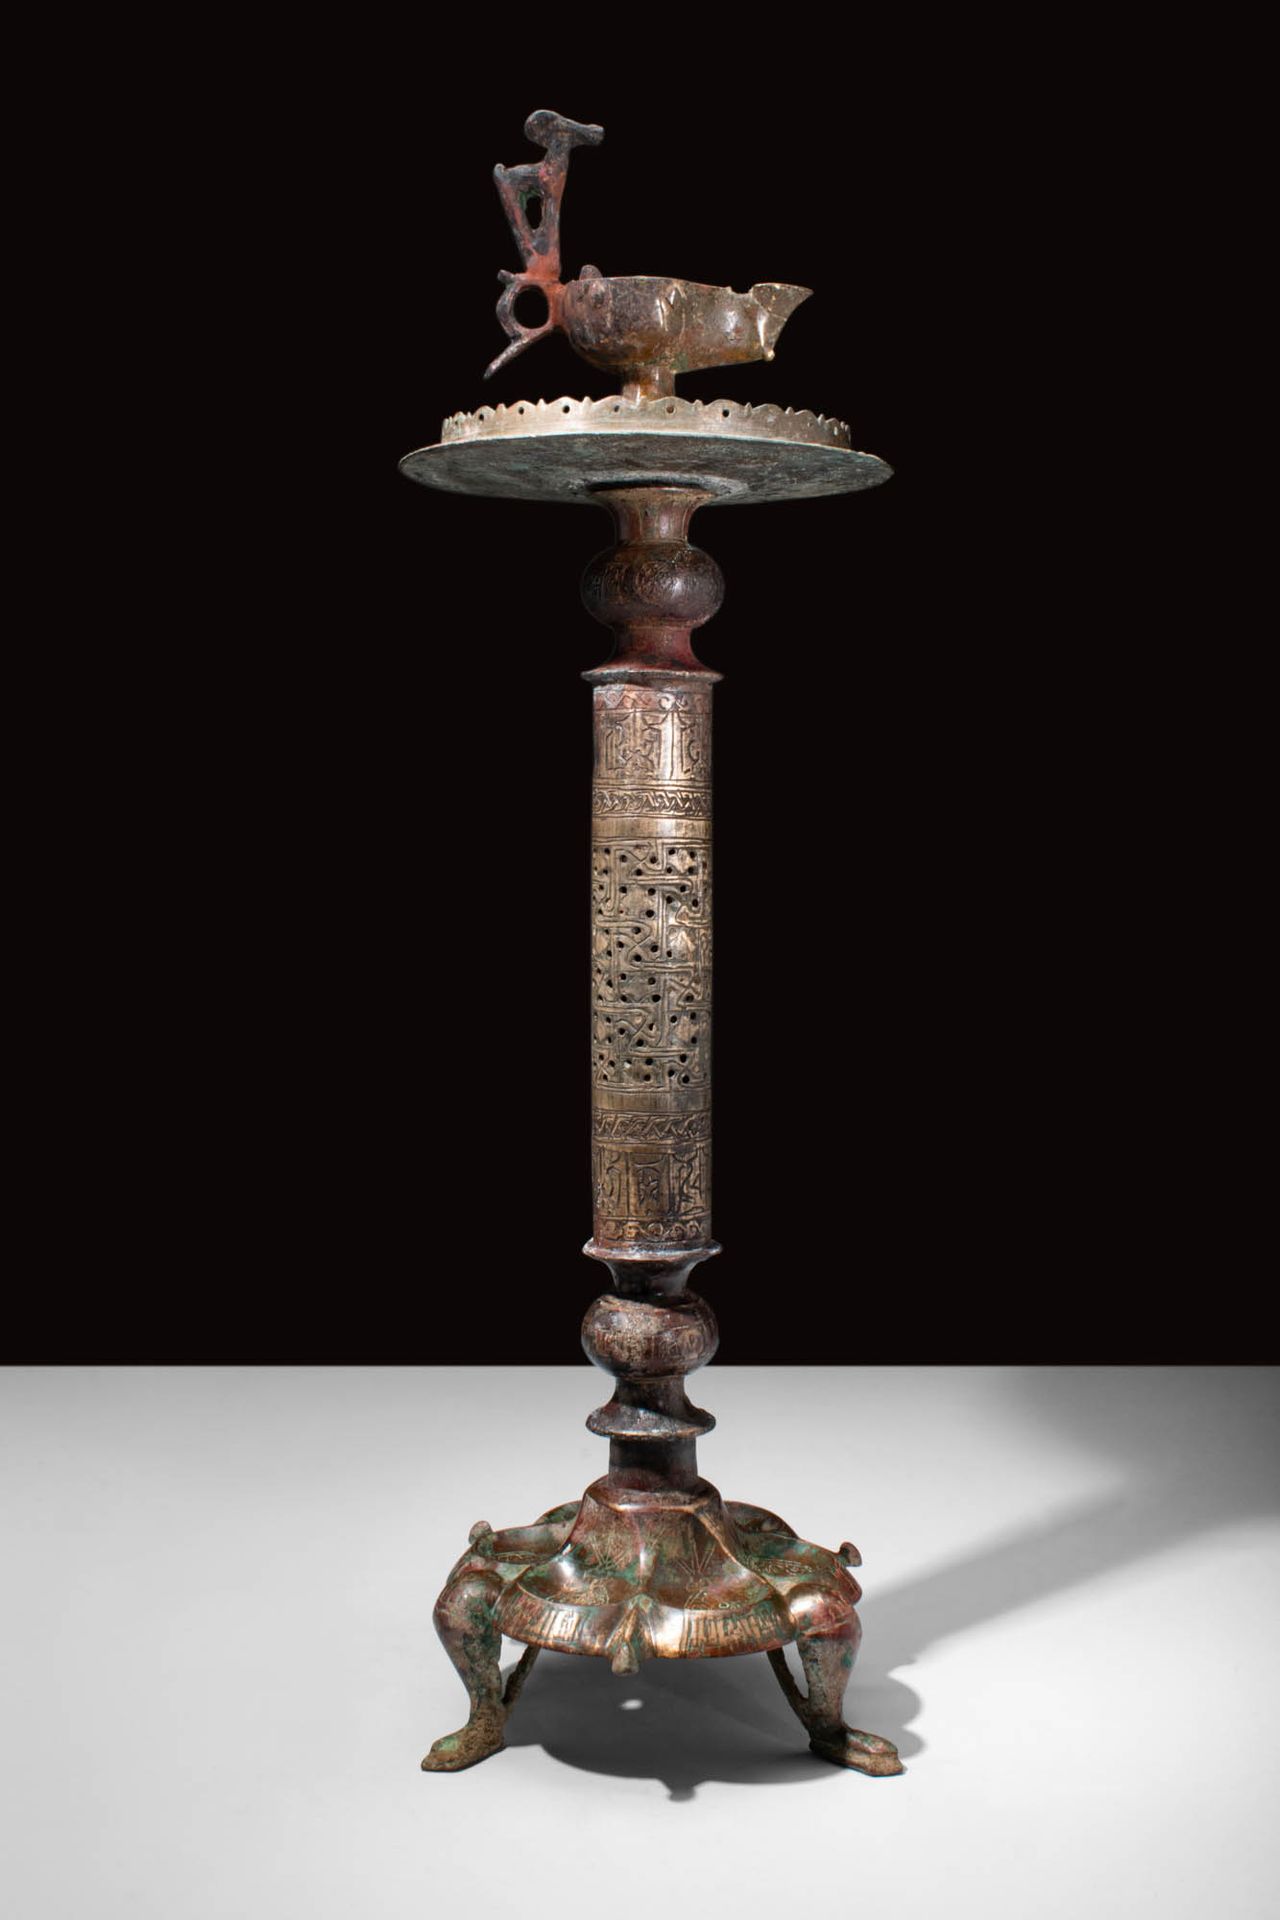 RARE SELJUK BRONZE LAMPSTAND Ca. AD 900 - 1200.
Ein islamischer seldschukischer &hellip;